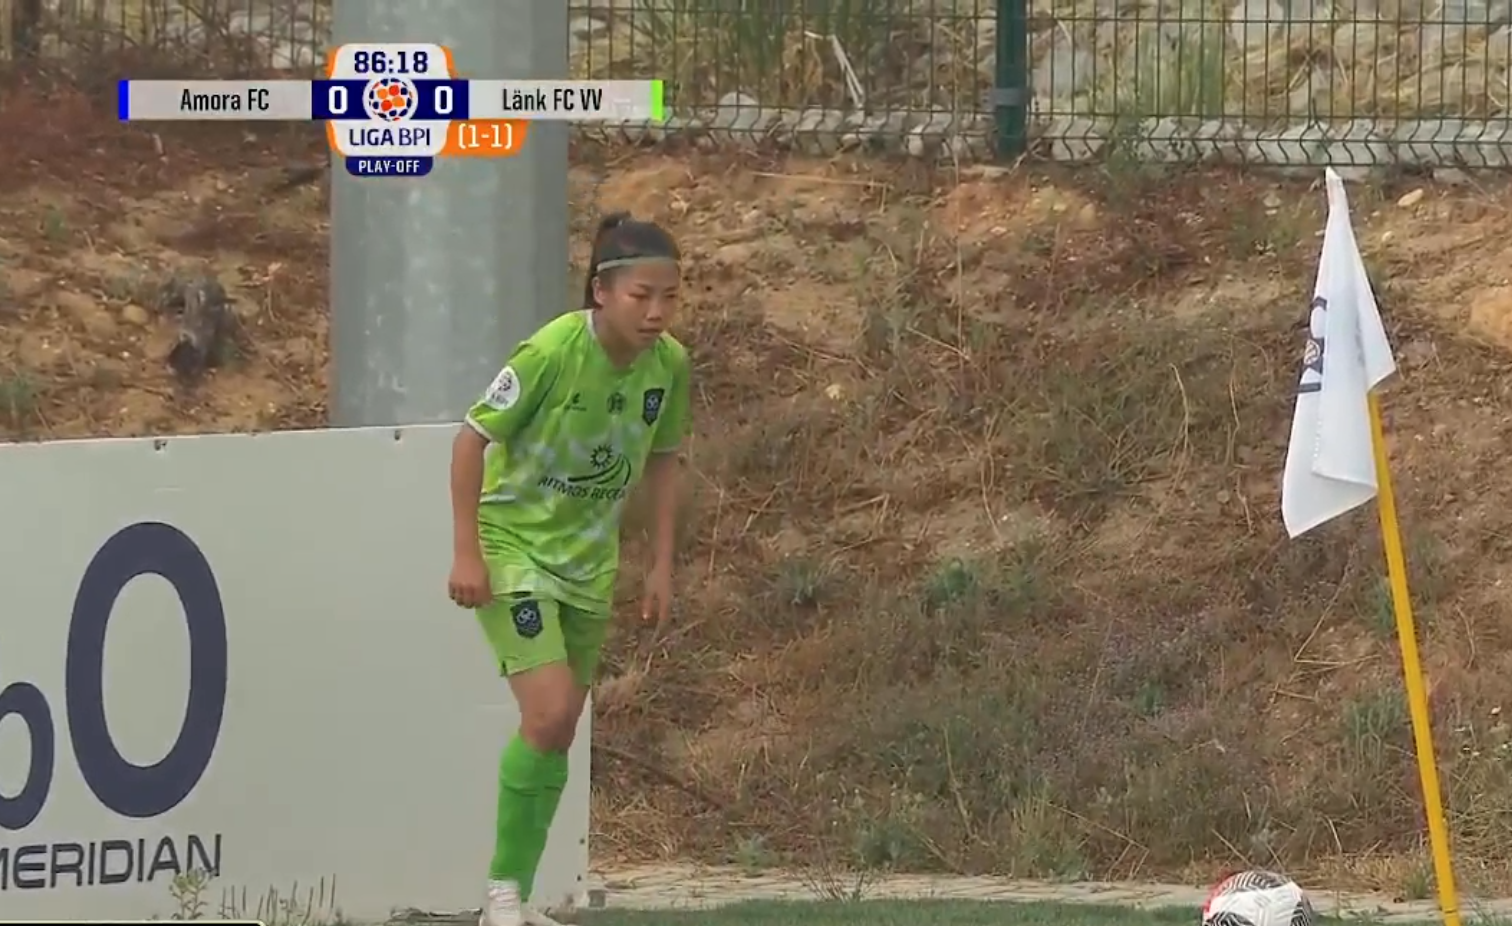 Quyết đấu 120 phút, Huỳnh Như cùng Lank FC đánh bại Amora, giành vé trụ hạng - Ảnh 3.